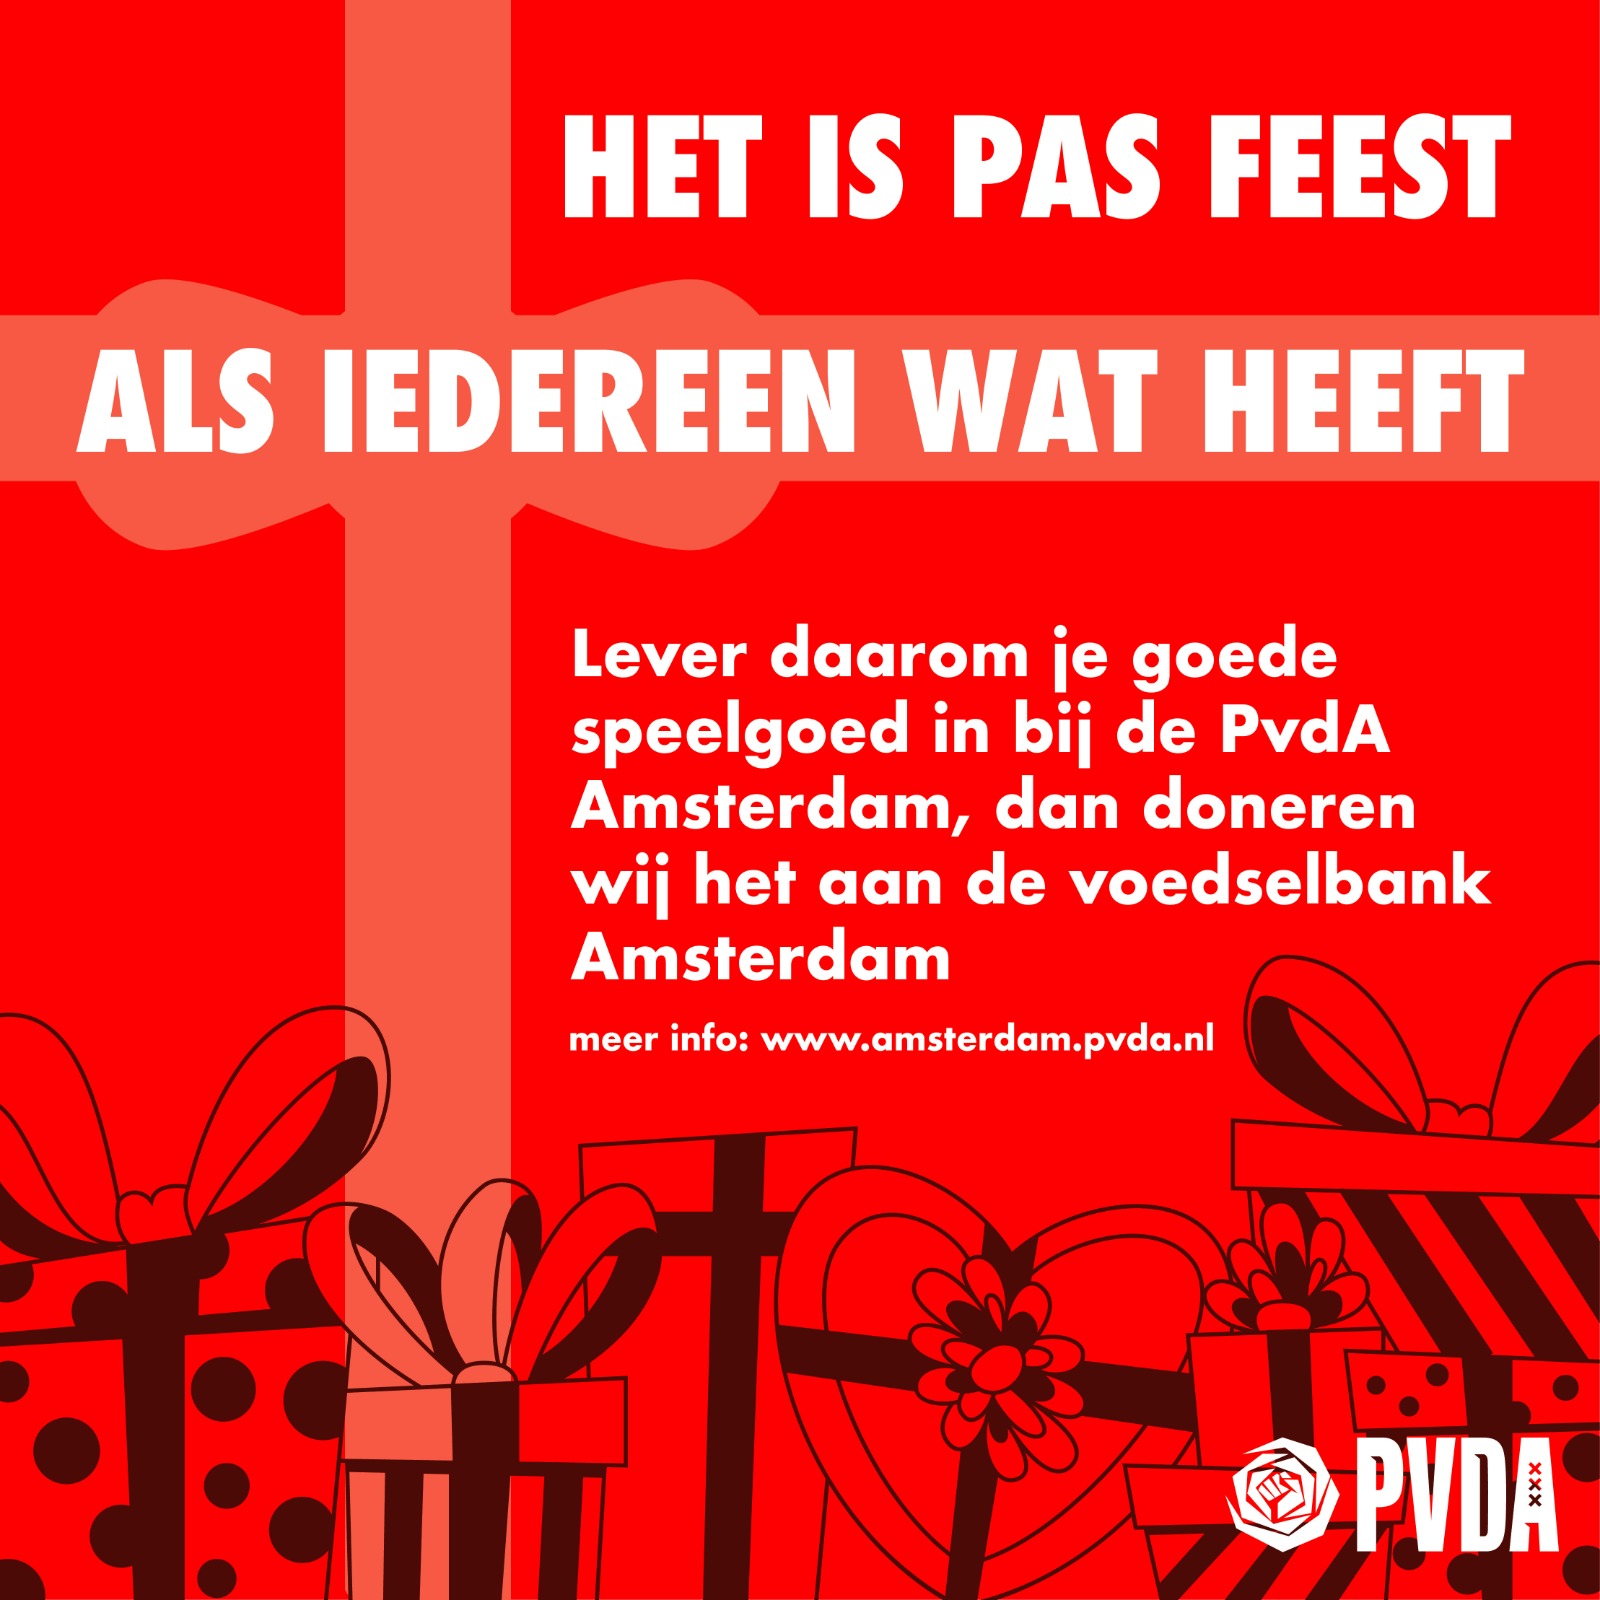 Ster speer Per Het is pas feest als iedereen wat heeft: doneer je speelgoed - PvdA  Amsterdam